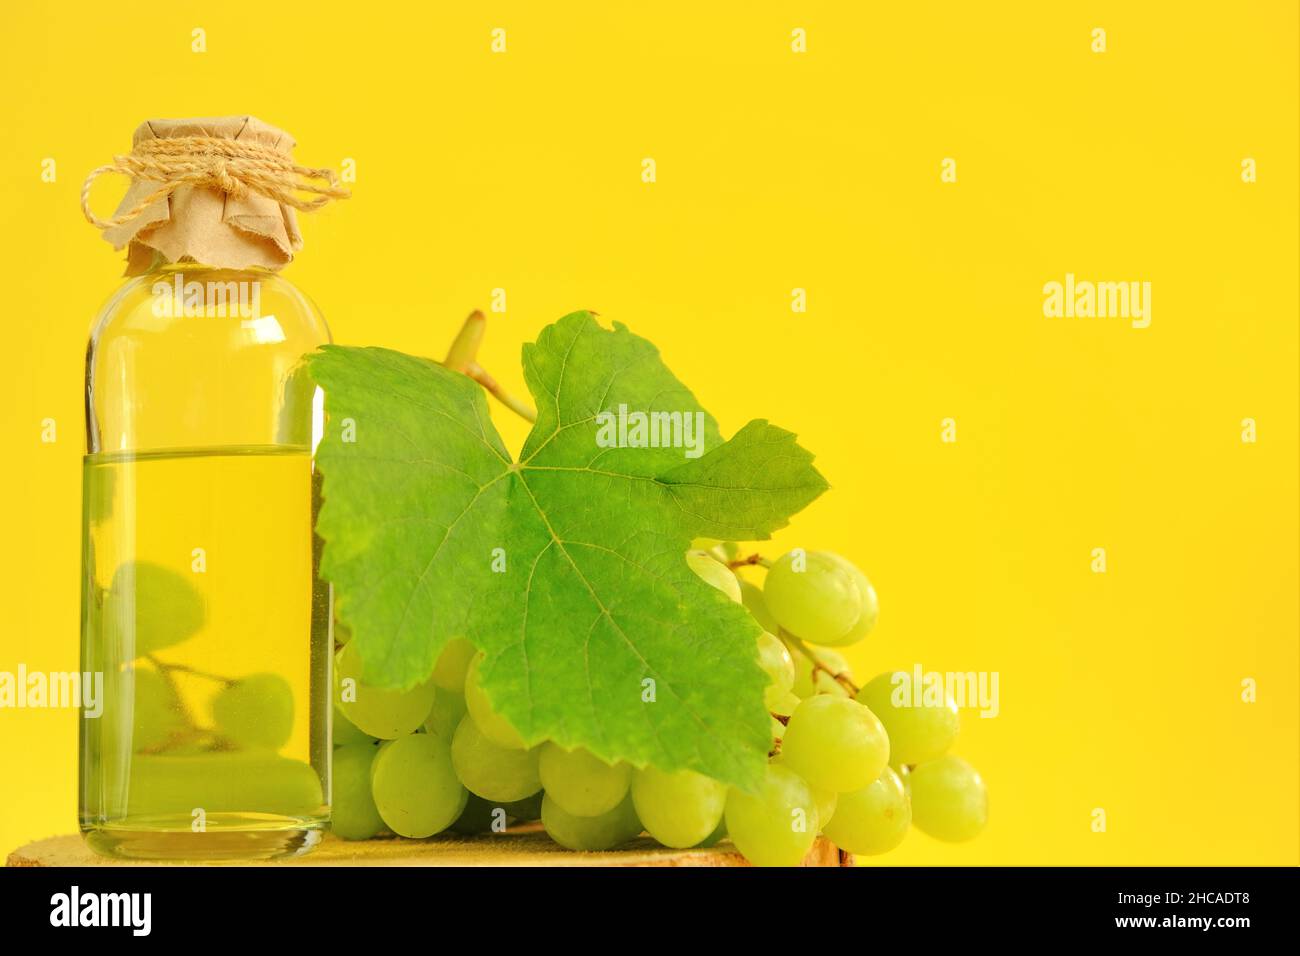 Traubenkernöl.Basis-Kosmetiköl für Massage und Pflege für Gesicht und Körper. Flasche und Bund von grünen Trauben auf einer gelben background.Organic Bio-Traube Stockfoto